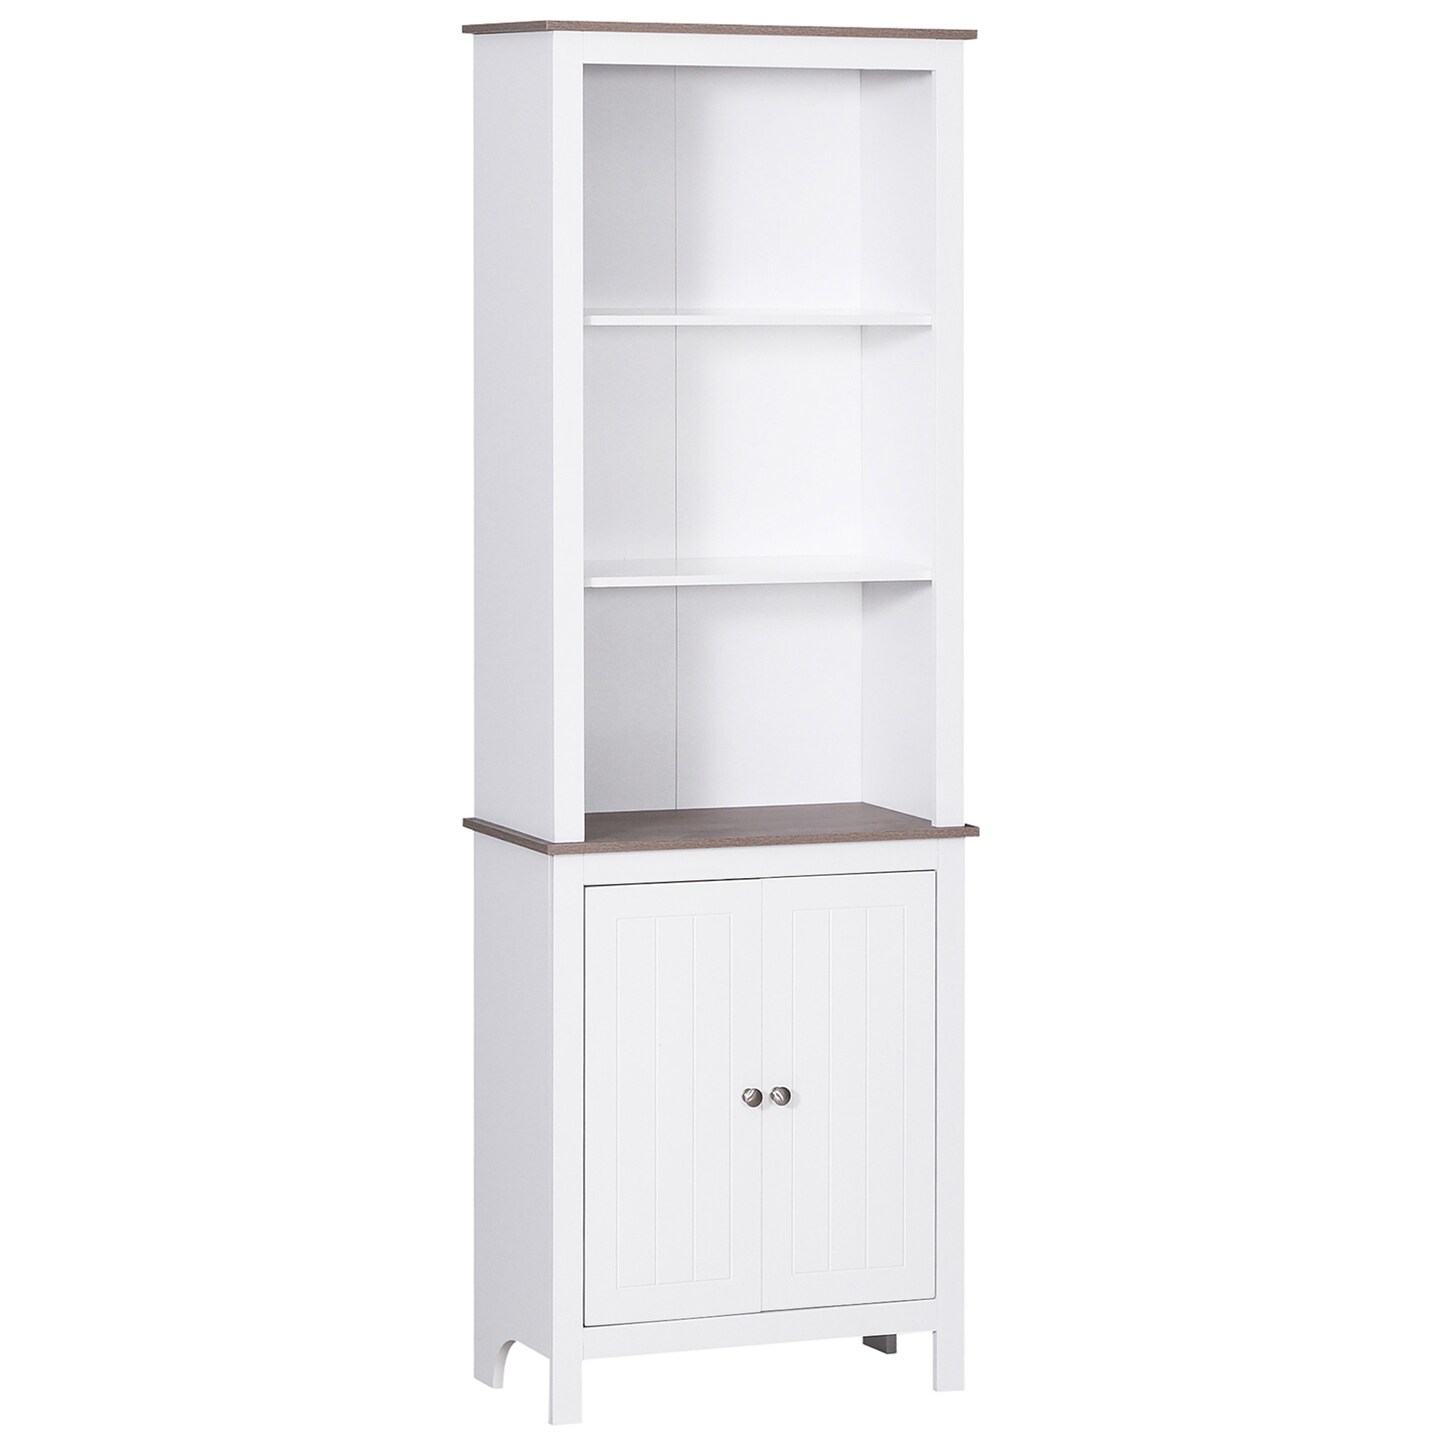 3-Tier White Storage Cabinet | Organize in Style